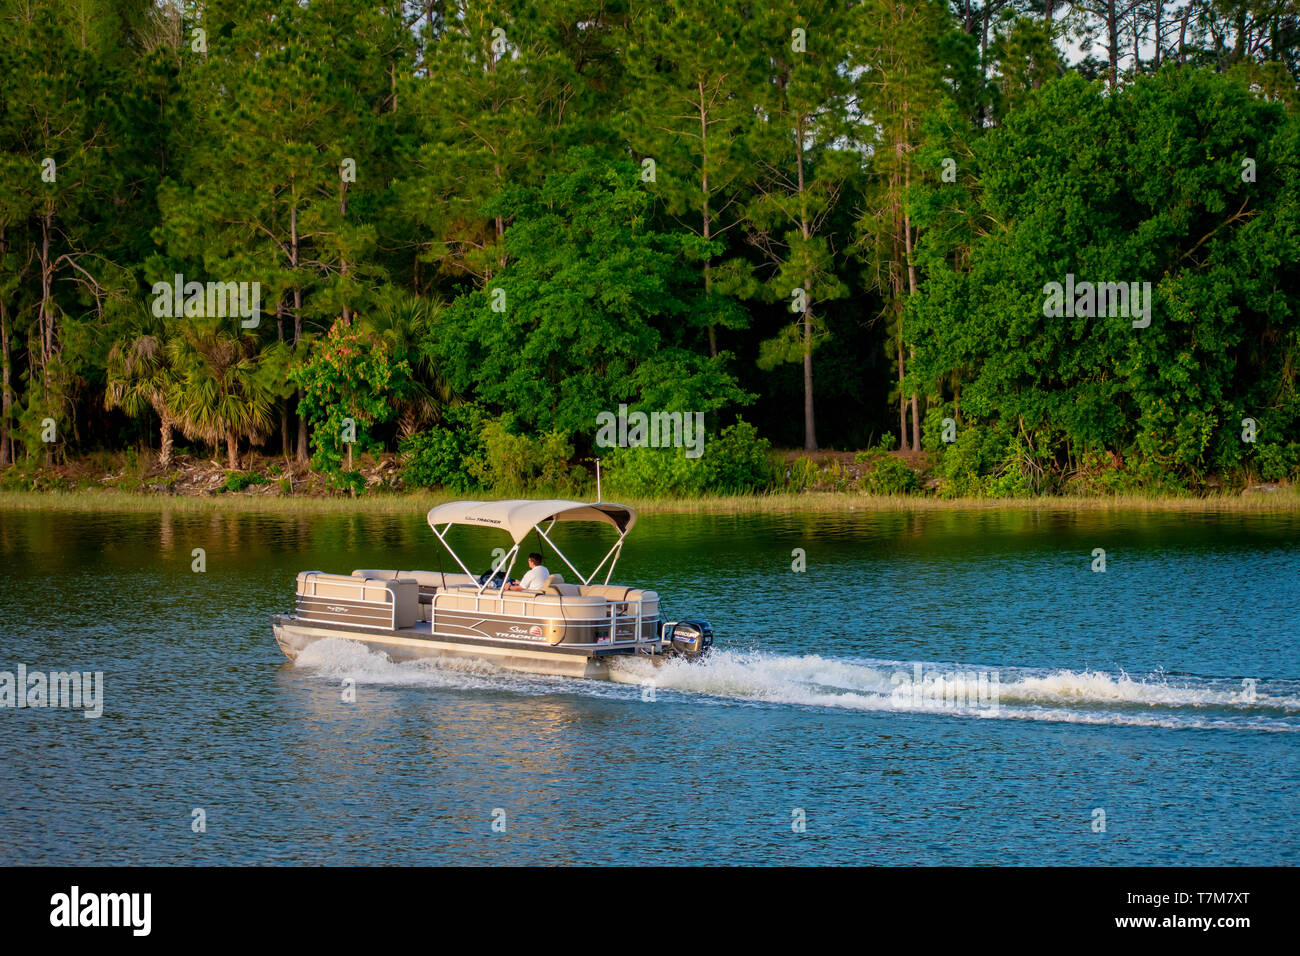 Orlando, Florida. April 02, 2019. Bucht Boot am blauen See am grünen Wald Hintergrund bei der Walt Disney World (1) Stockfoto